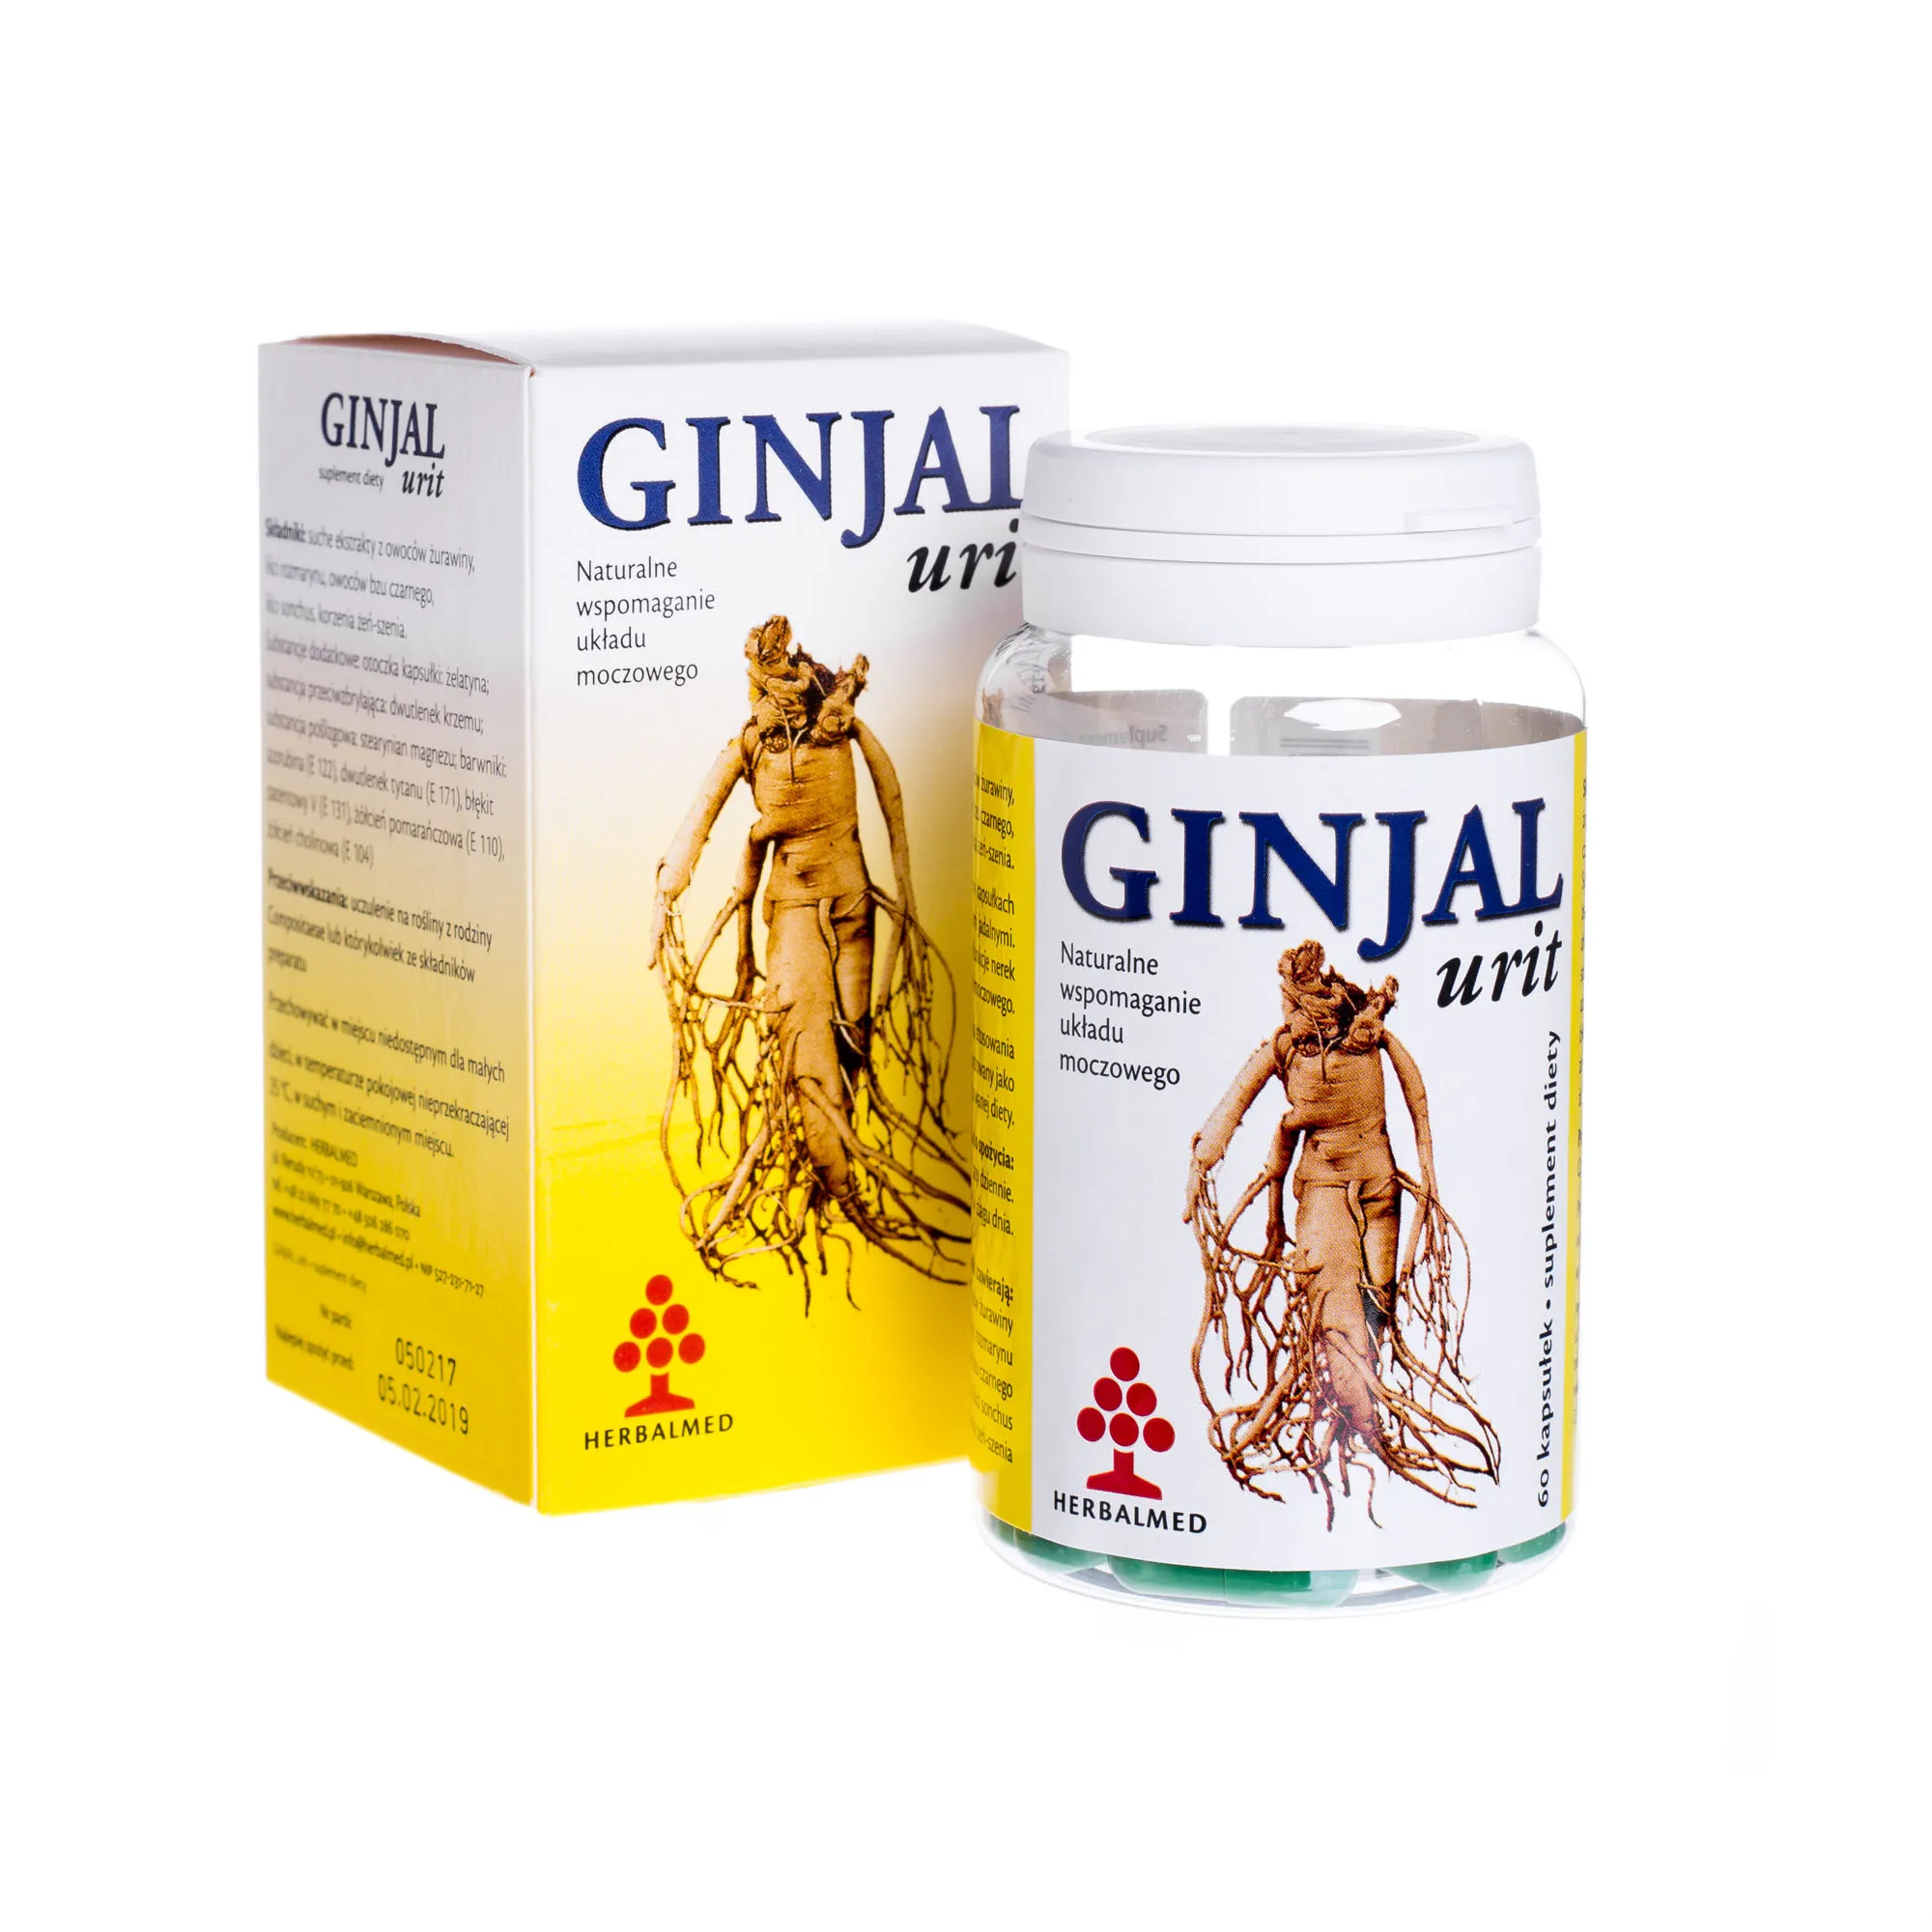 Ginjal Urit, naturalne wspomaganie układu moczowego, 60 kapsułek